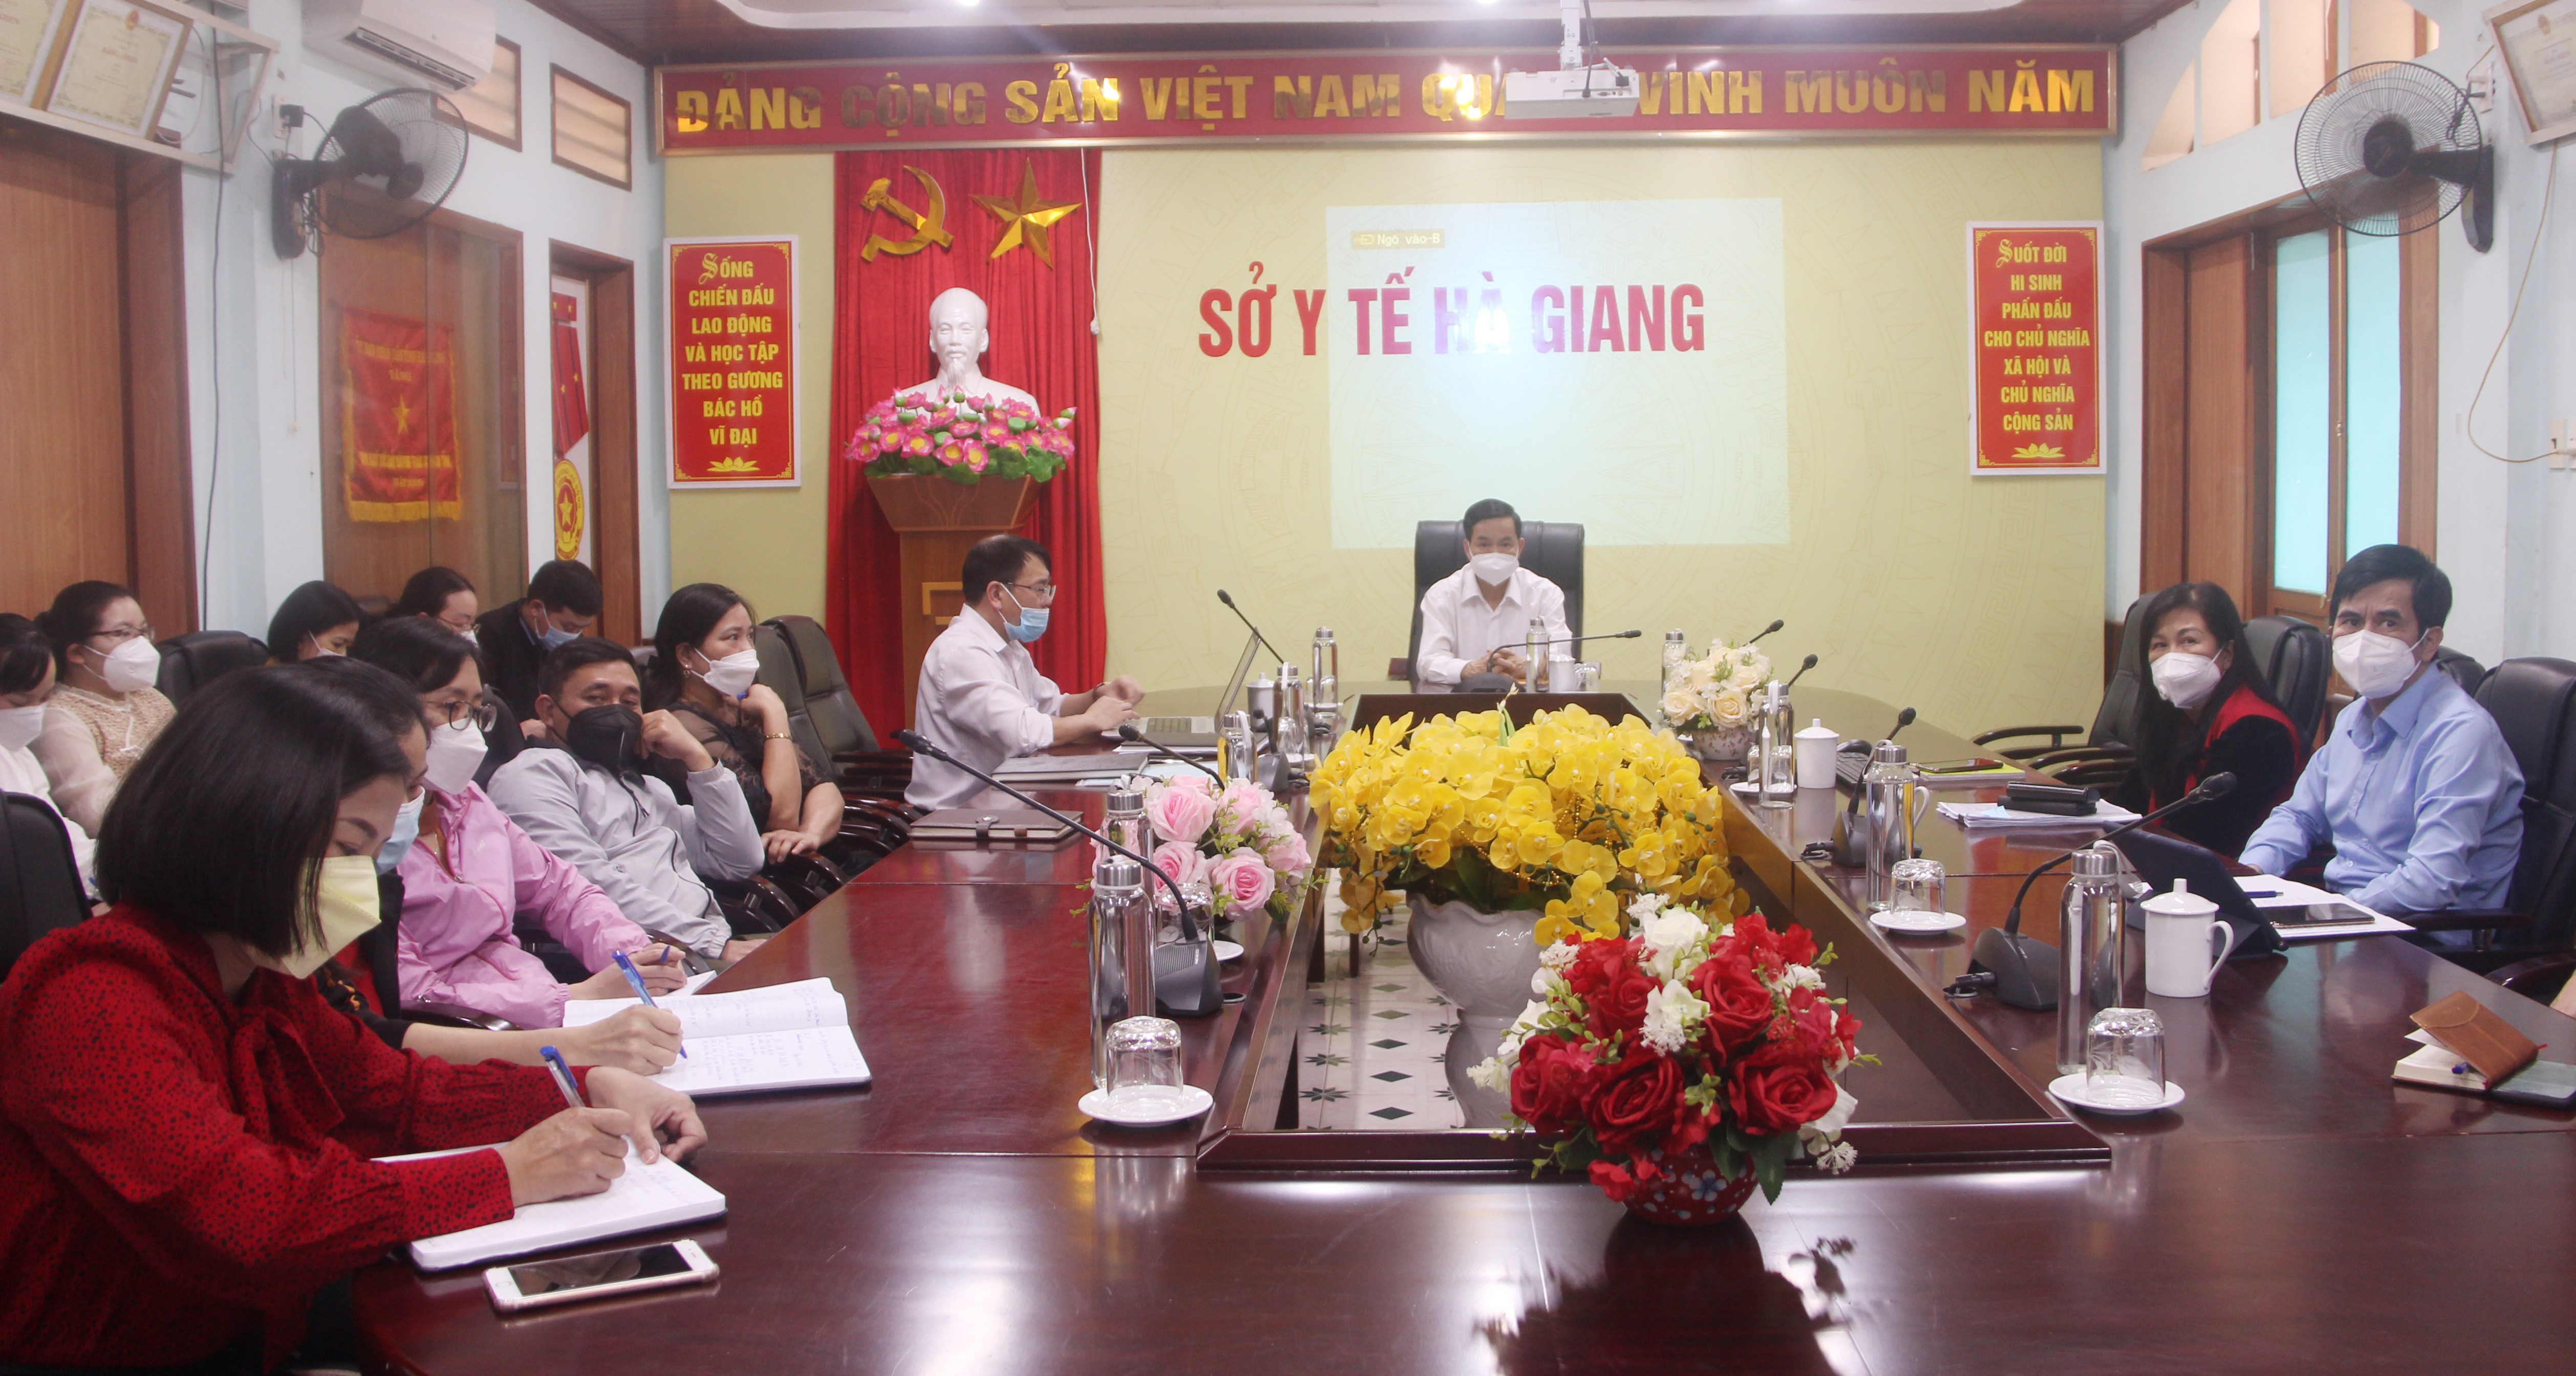 Các đại biểu tham dự hội nghị tại điểm cầu Hà Giang